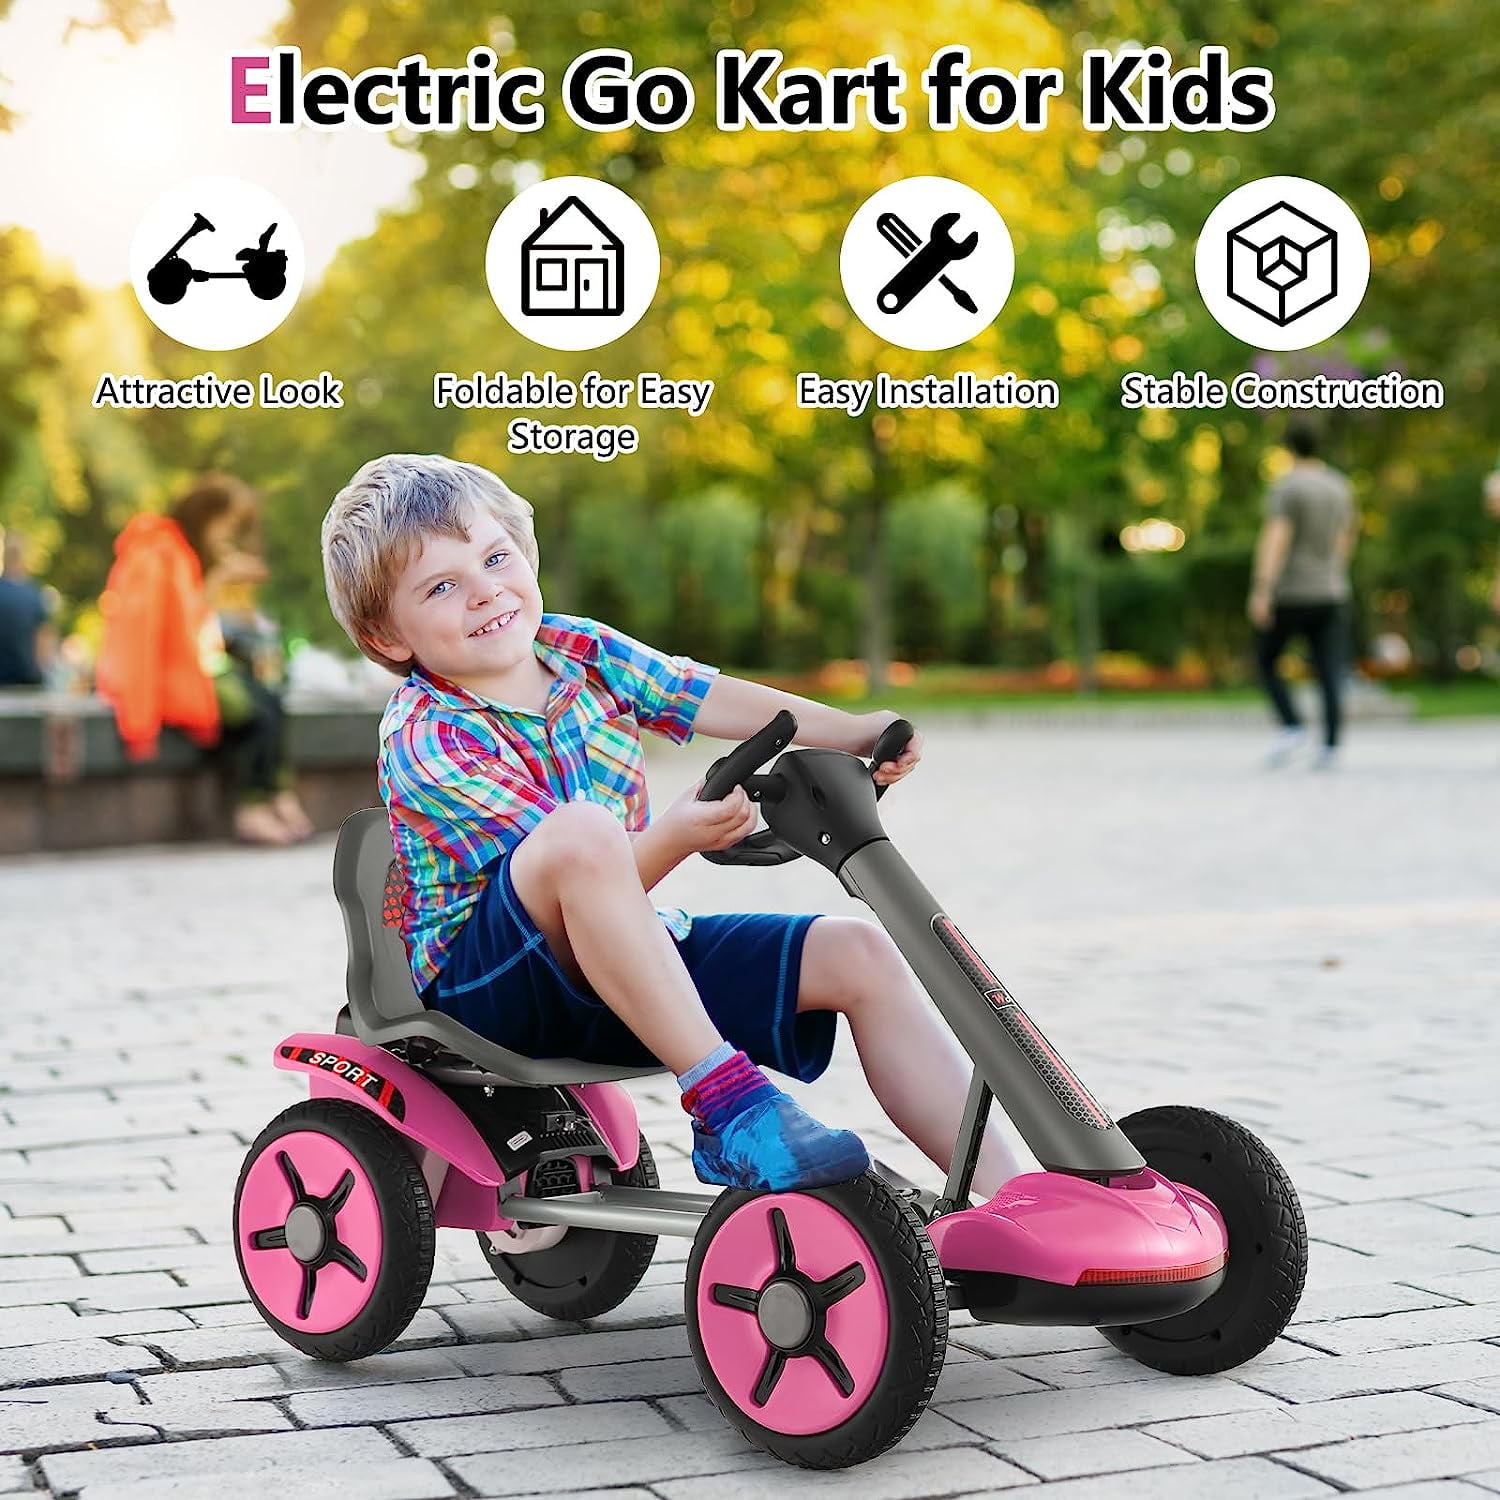 Mini Go Kart Open Box#openbox #kidstoys #rideoncar #gokart #minigokart